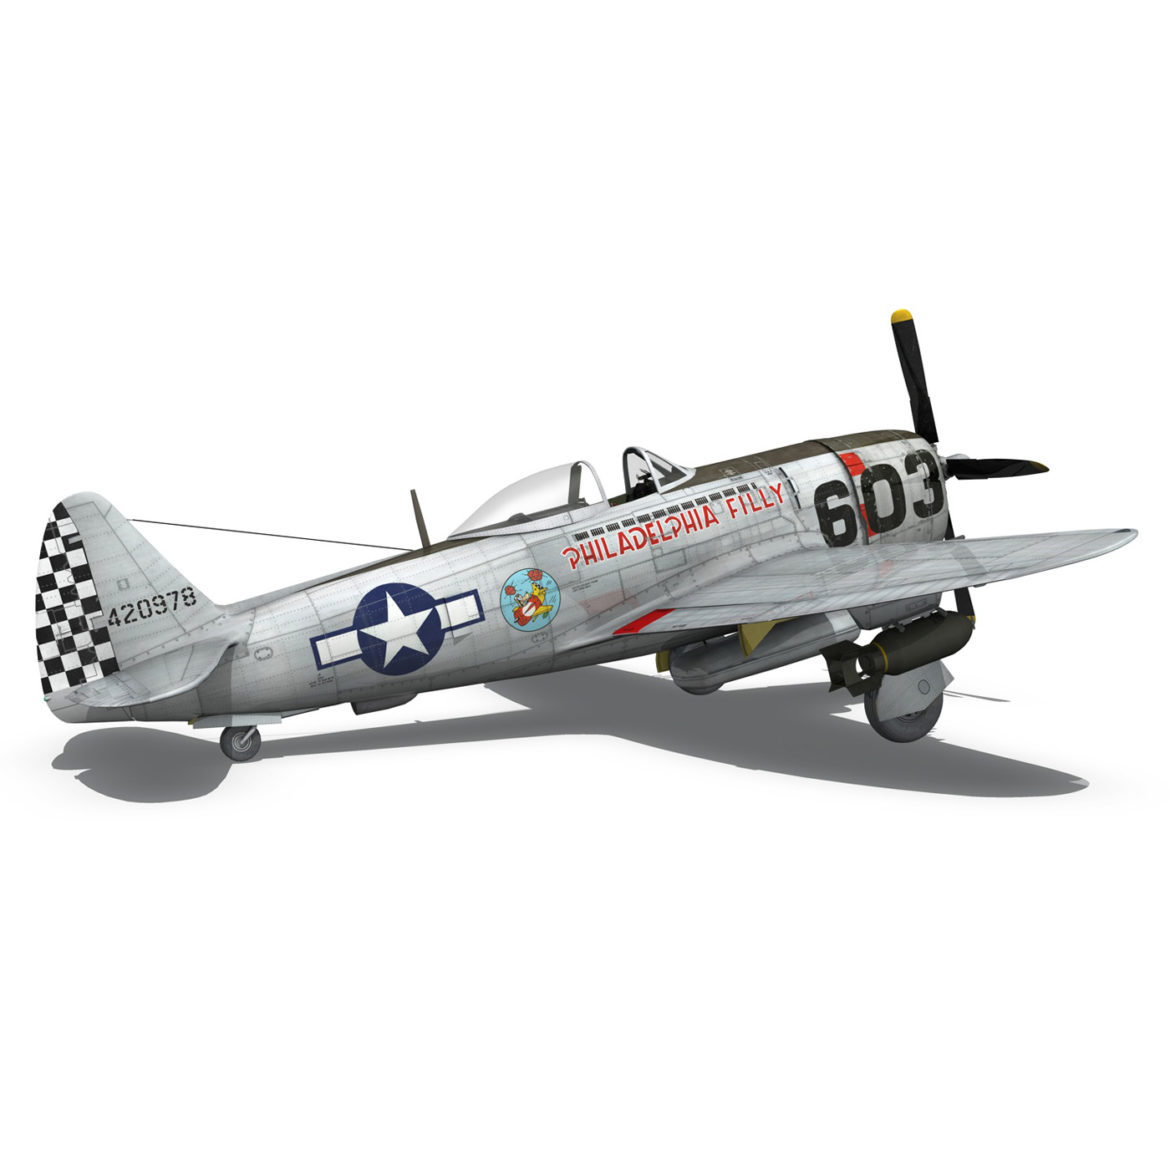 republic p-47d thunderbolt – torrid tessie 3d model 3ds c4d lwo lw lws obj fbx 303873